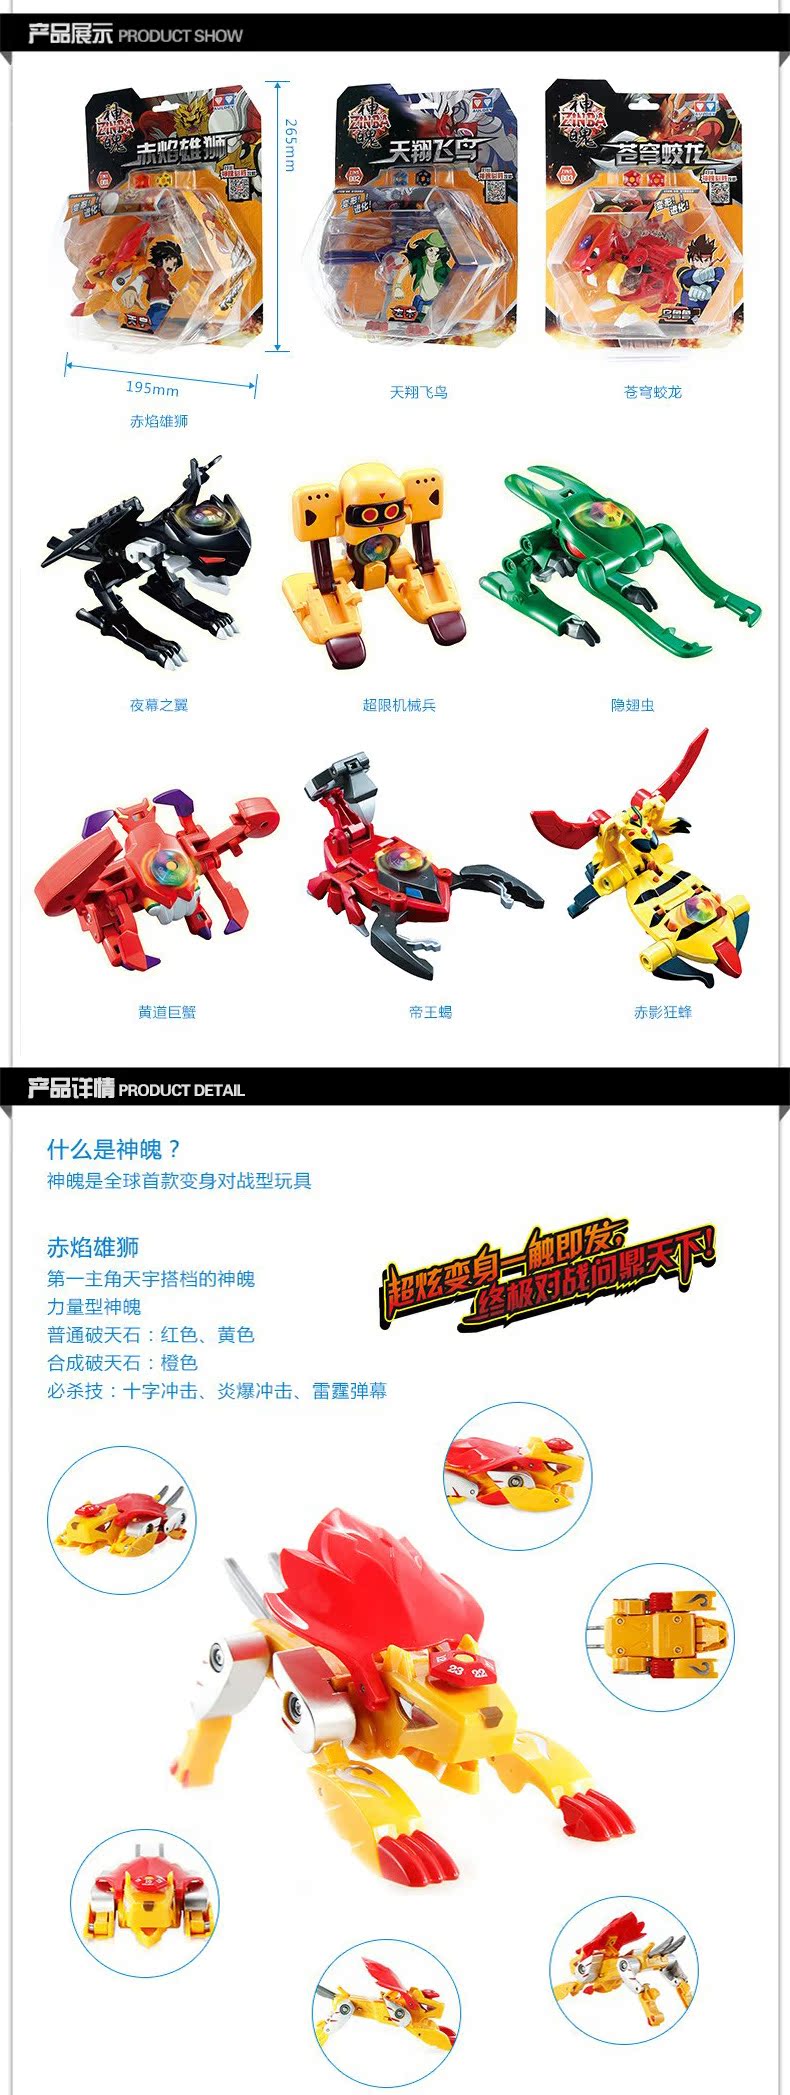 神魄 奥迪双钻2013最新产品 全球首款变身对战型玩具 赤焰雄狮